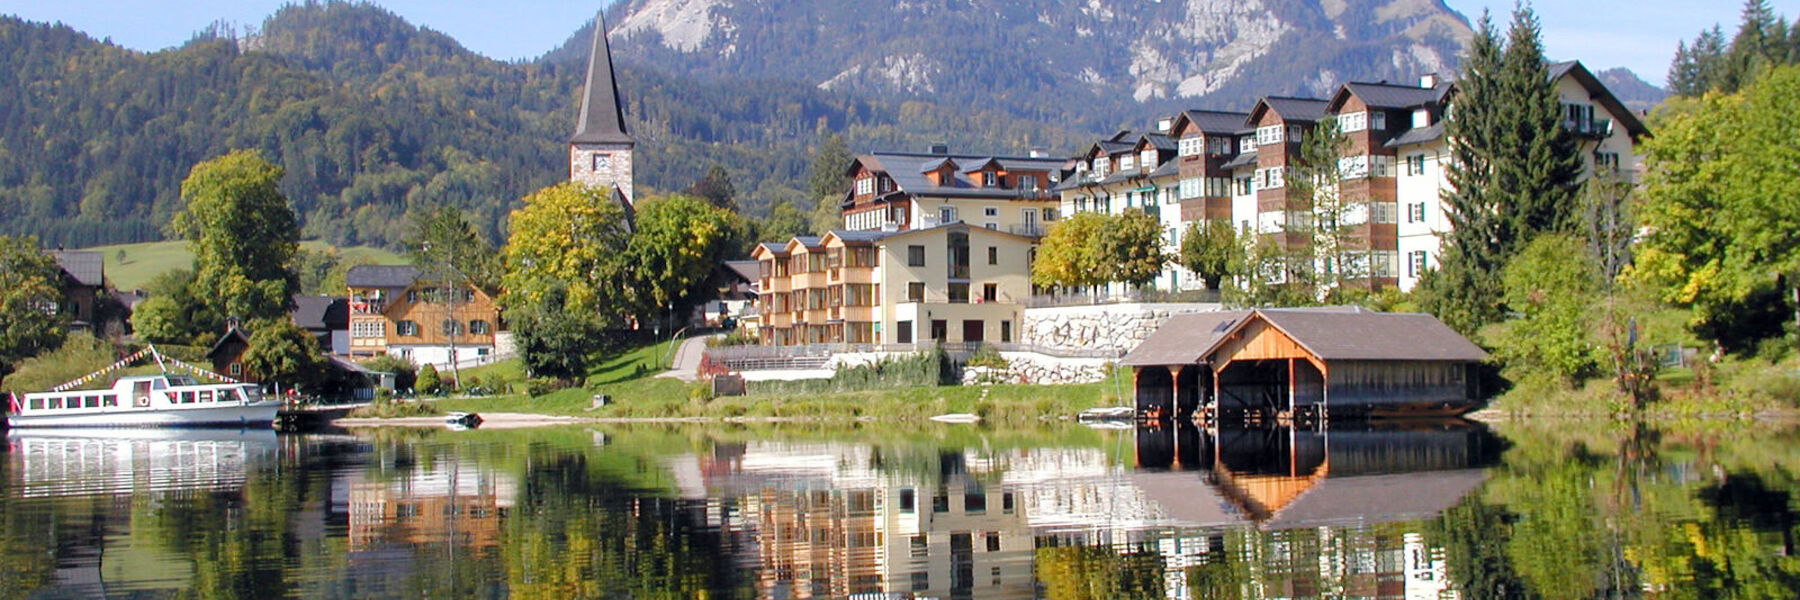 Hotel am See - Seeresidenz Titelbild